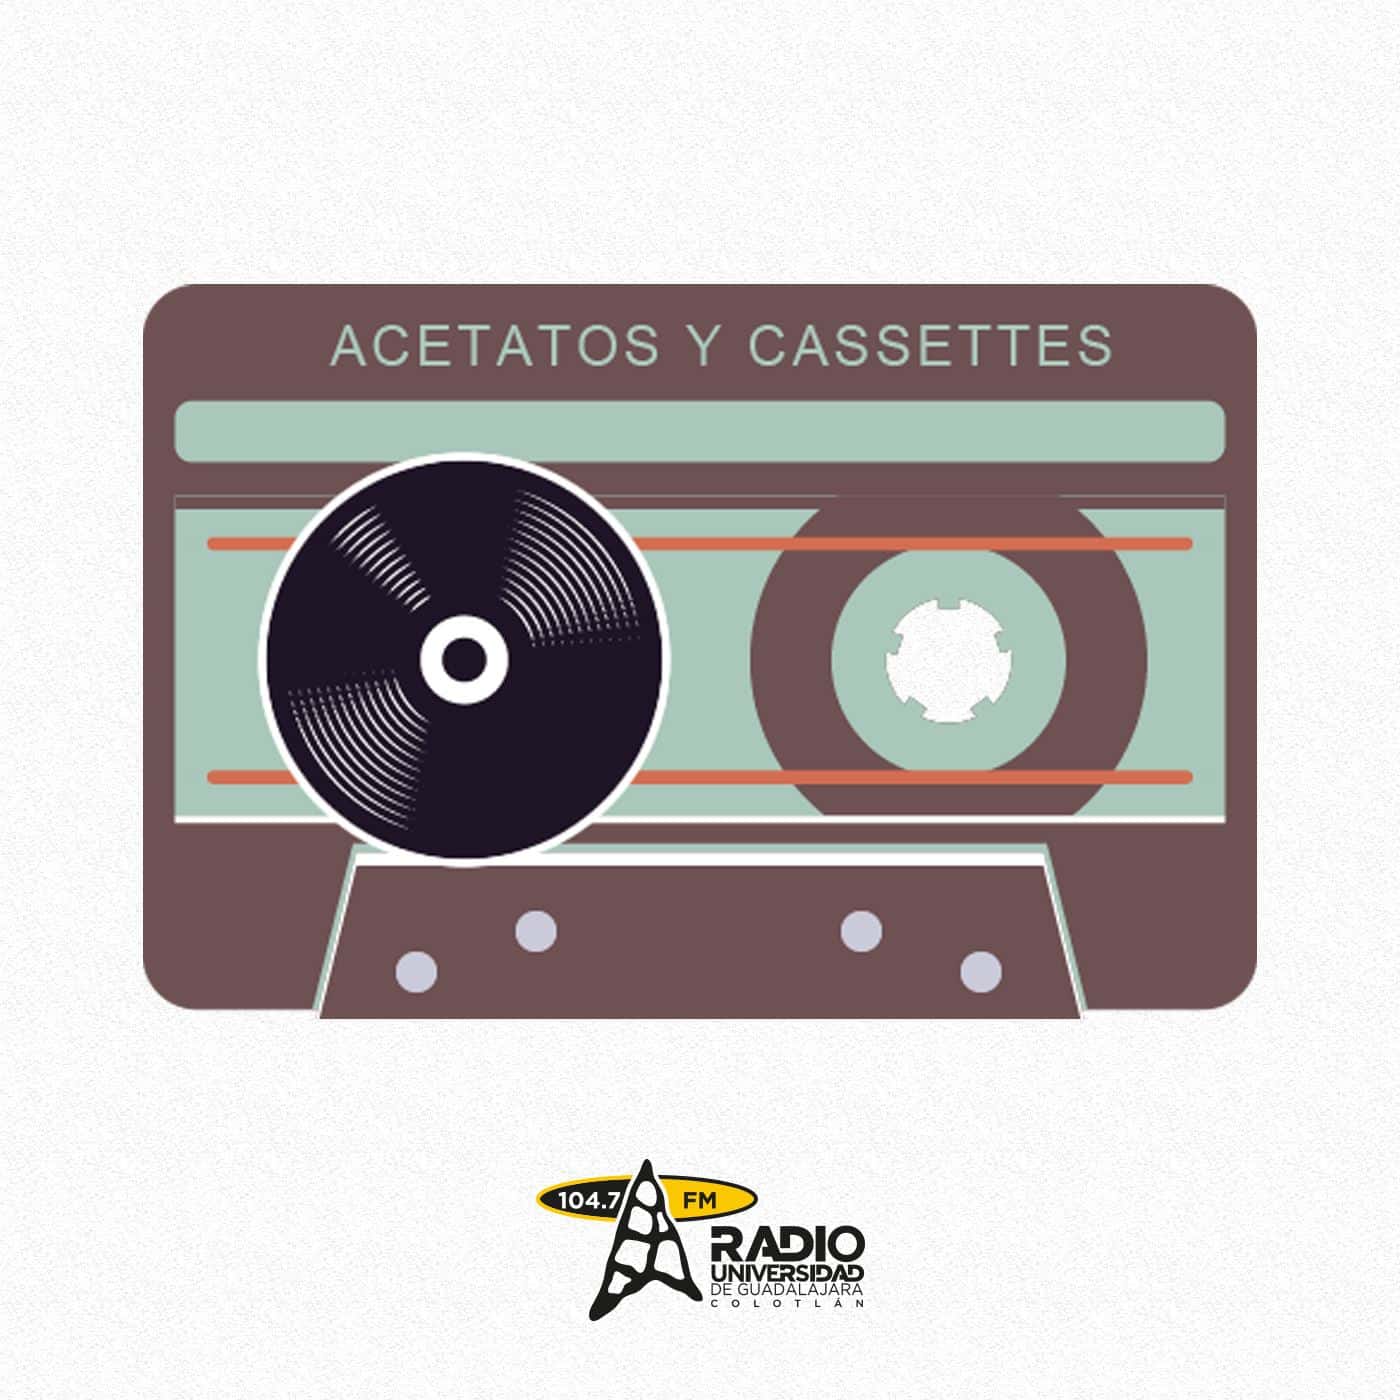 acetatosycassettes